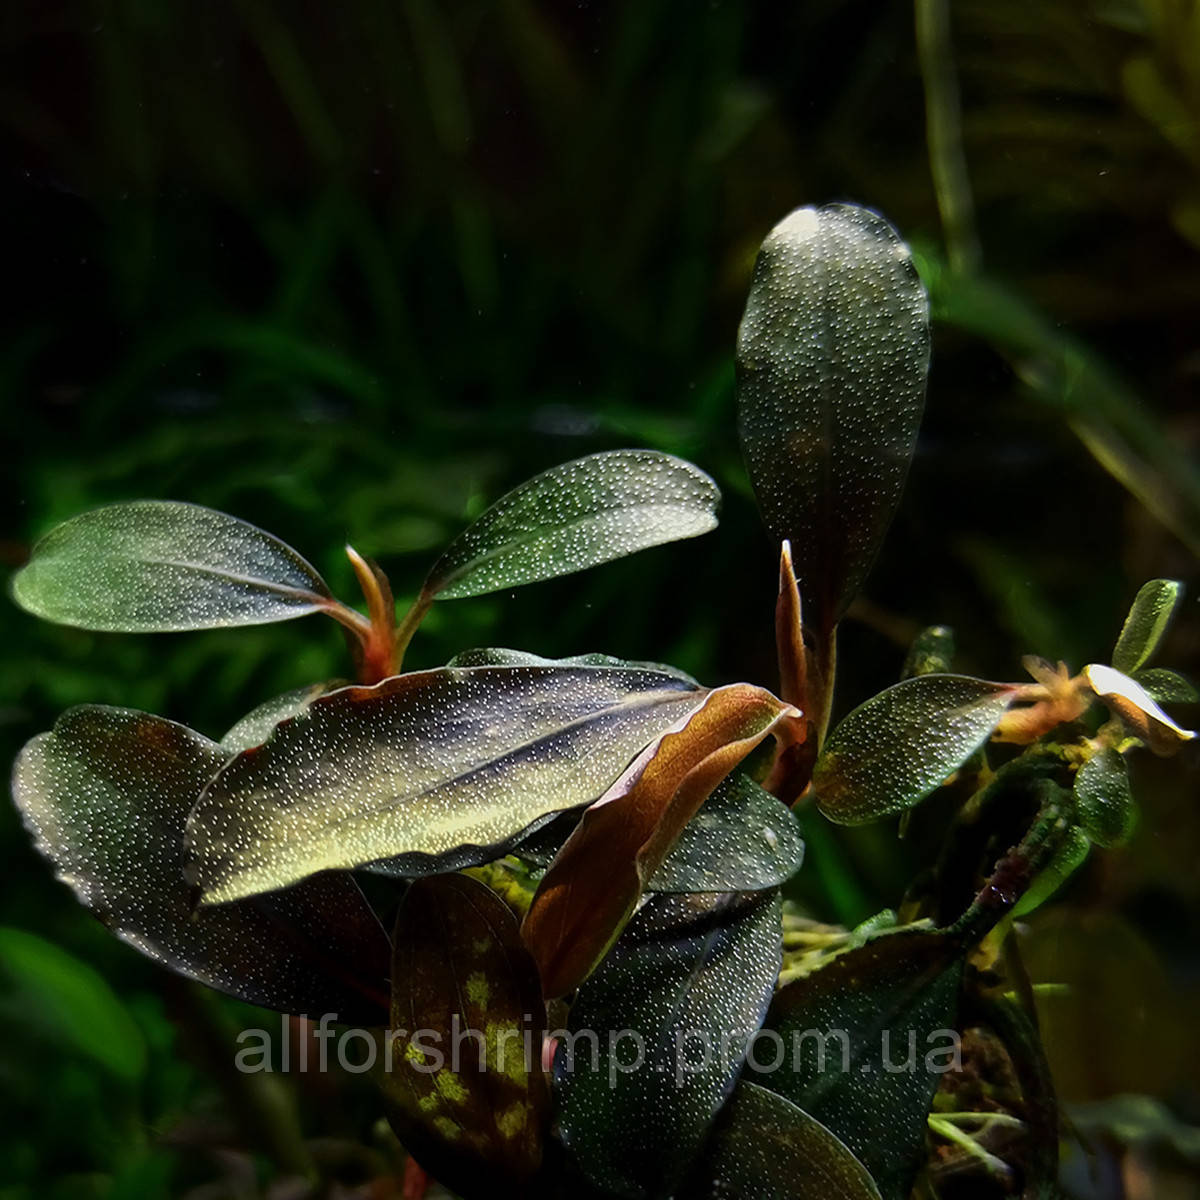 Буцефаландра / Bucephalandra sp. Blue Metalik, отросток 5 листов.